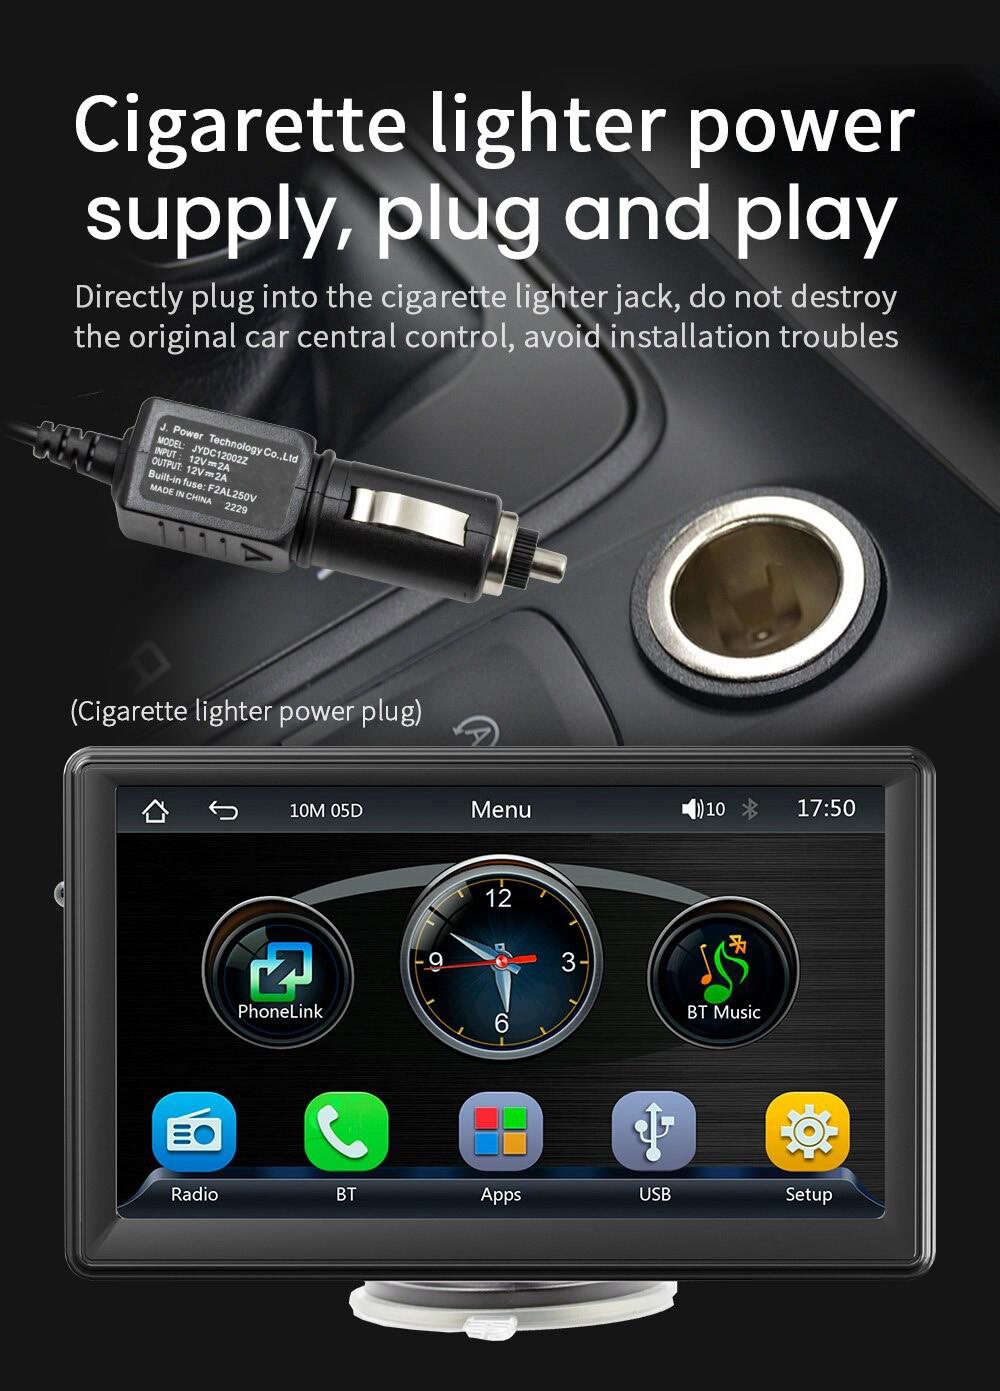 Draagbare MP5-speler voor in de auto, FM-radio, met 7-inch aanraakscherm, Bluetooth-muziekondersteuning en handsfree bellen